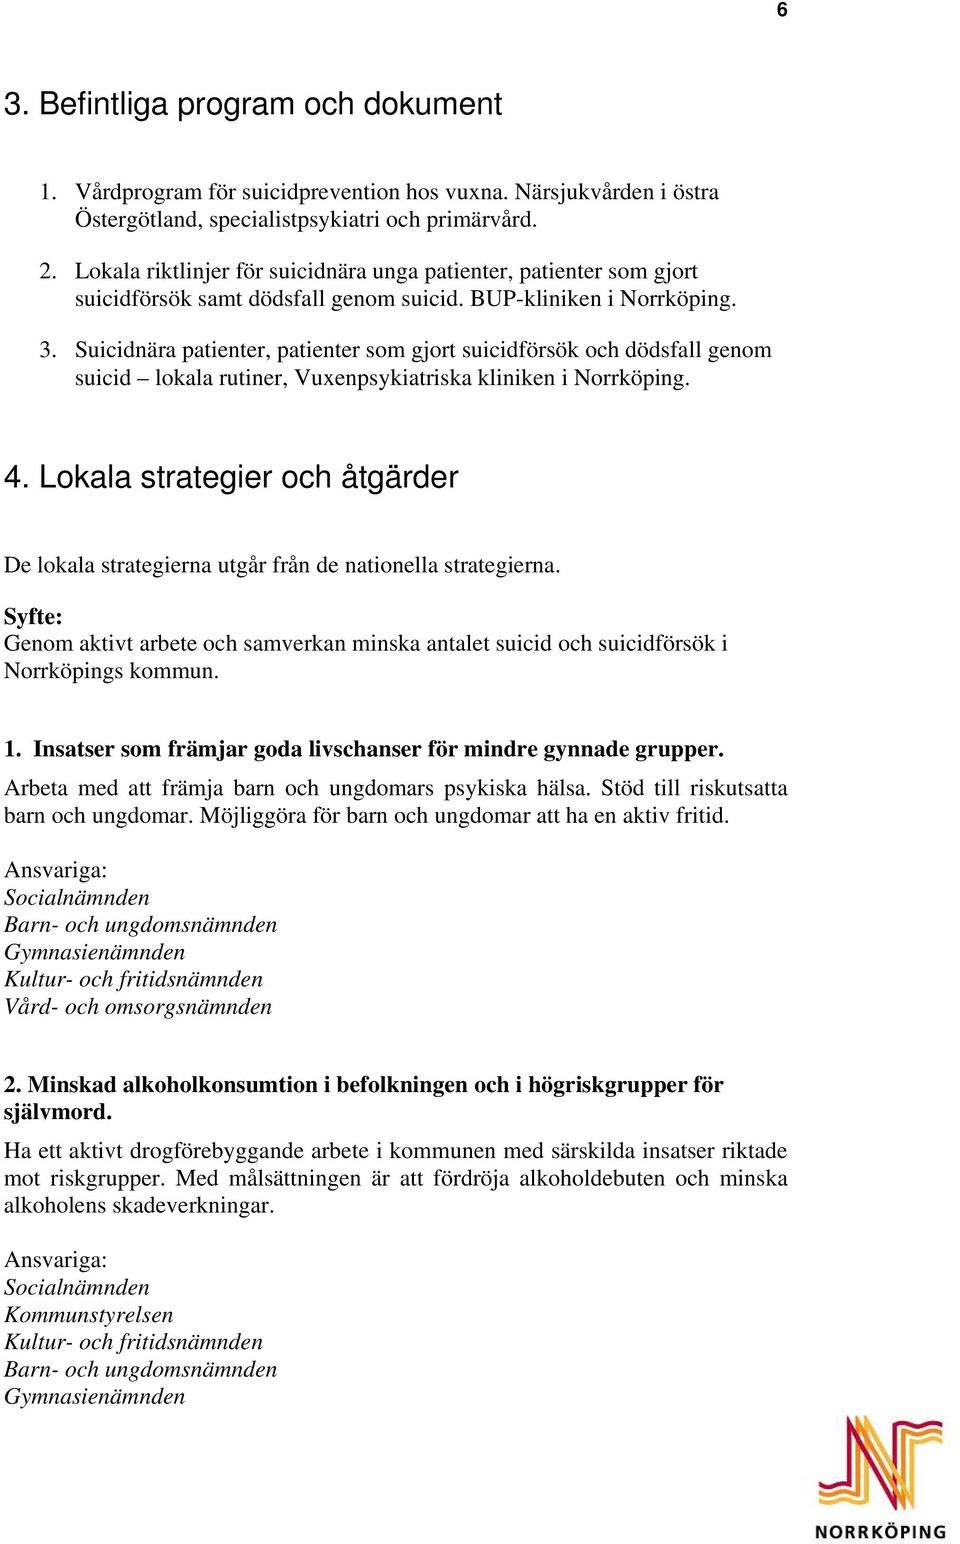 Suicidnära patienter, patienter som gjort suicidförsök och dödsfall genom suicid lokala rutiner, Vuxenpsykiatriska kliniken i Norrköping. 4.